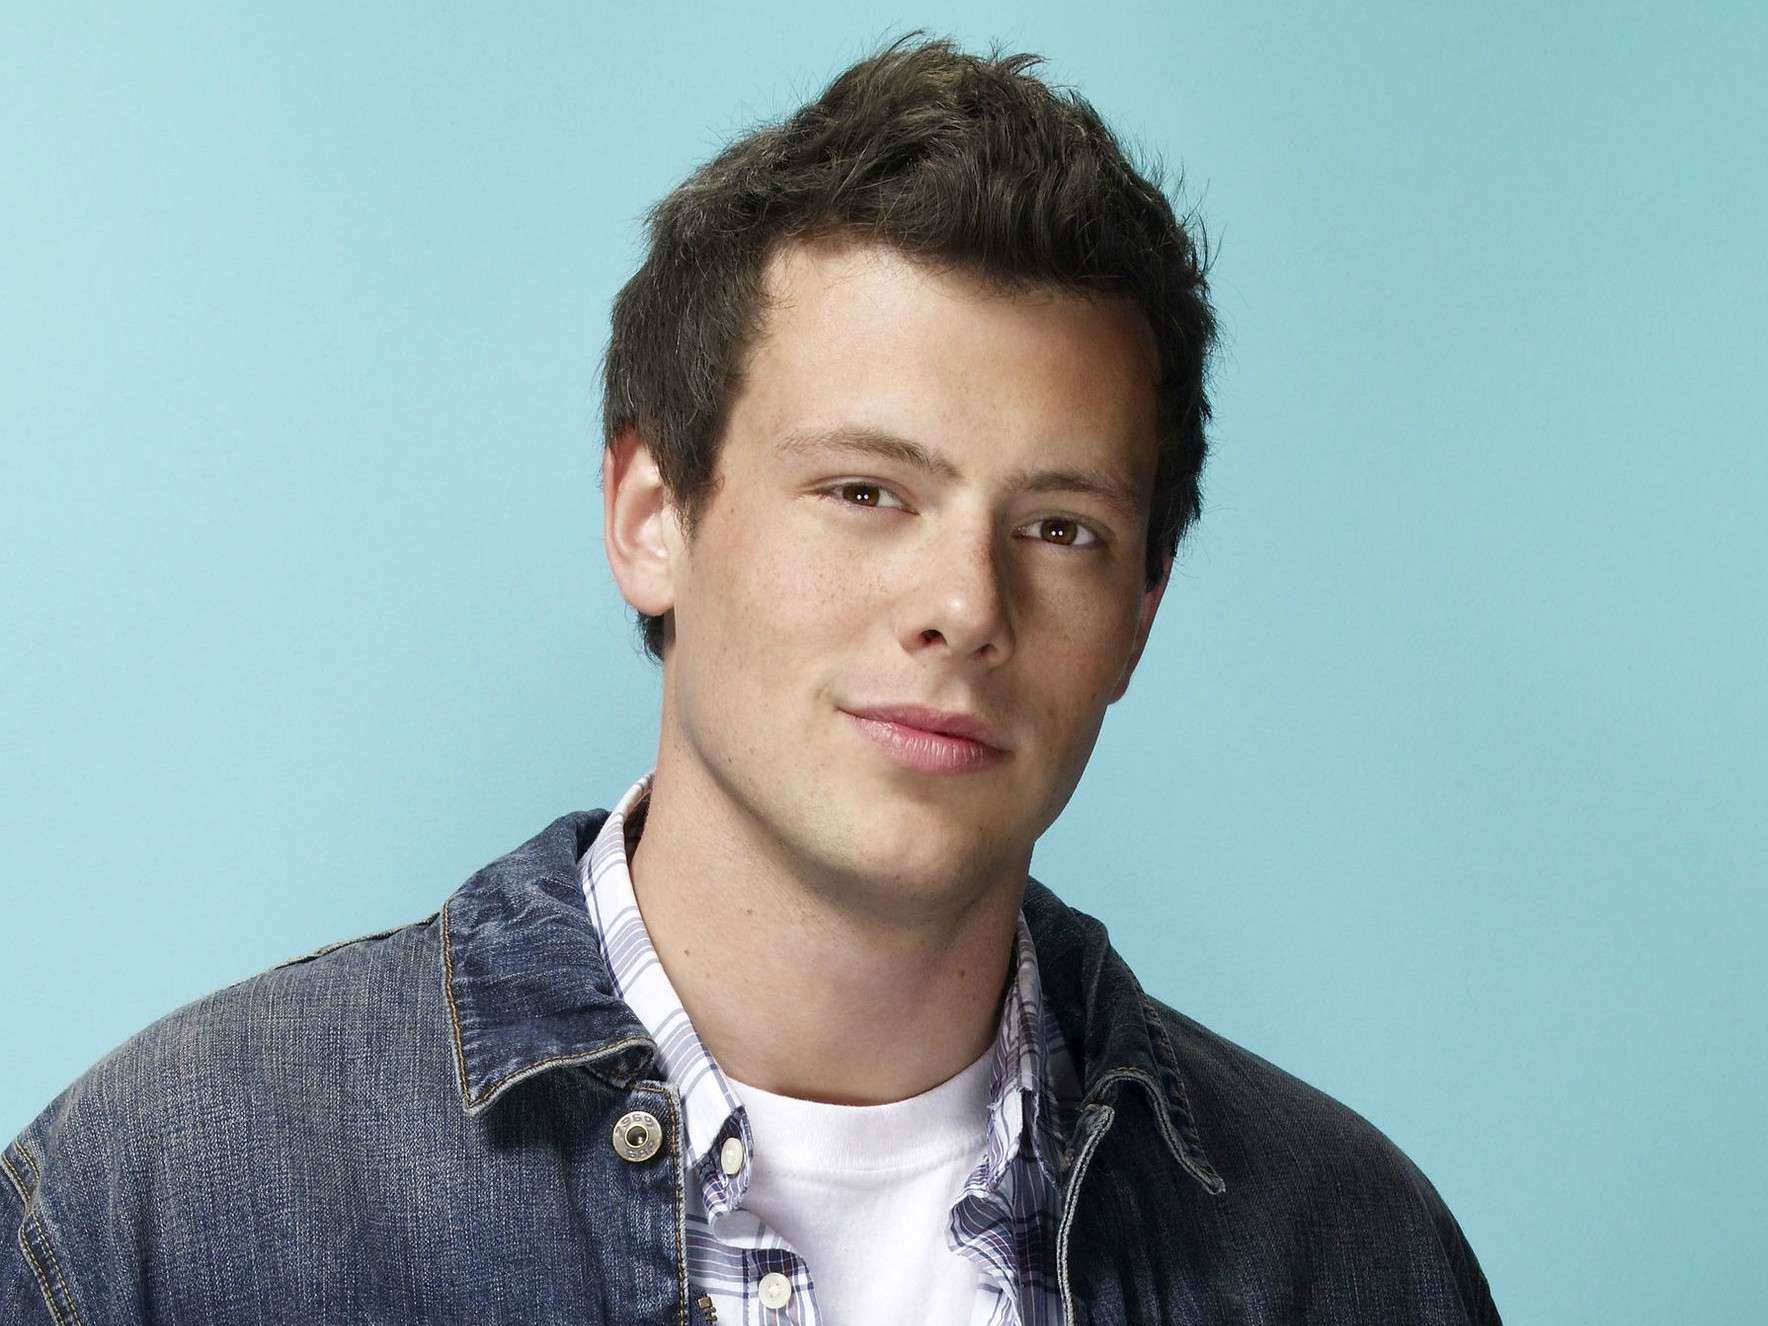 Na primeira temporada de 'Glee', em 2009, Finn Hudson tinha 16 anos, mas seu intérprete, o falecido Cory Monteith (1982-2013), já tinha 27 anos de idade. (Foto: Divulgação)